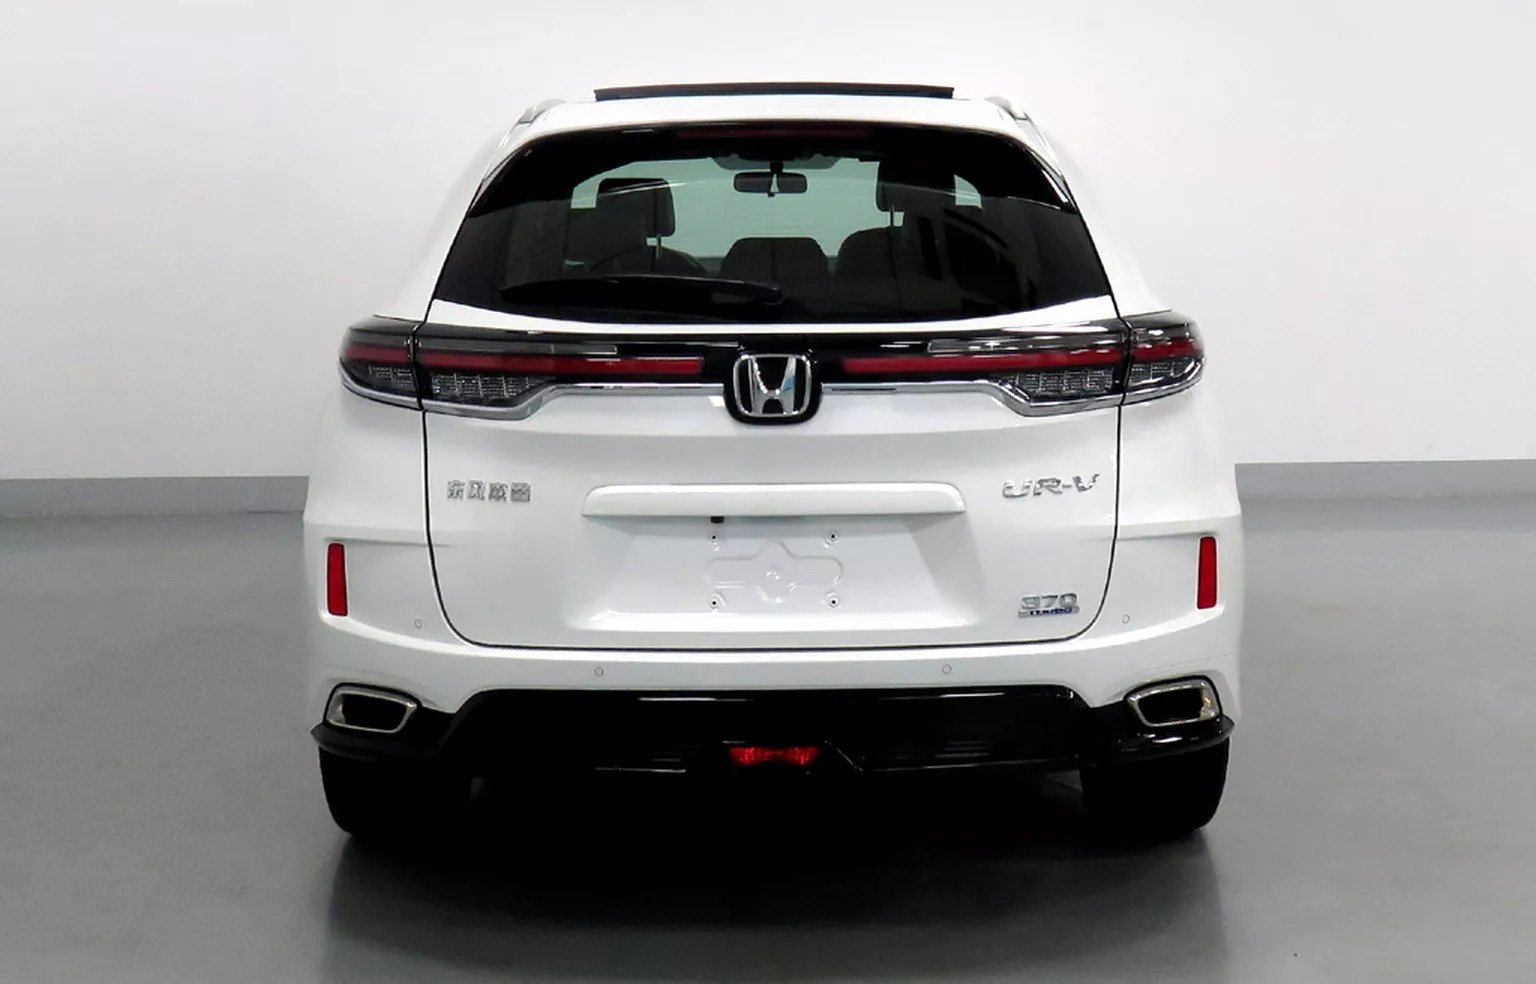 Honda UR-V từng về Việt Nam lộ bản nâng cấp: Lớn hơn CR-V, cứng cáp hơn bản cũ - Ảnh 2.